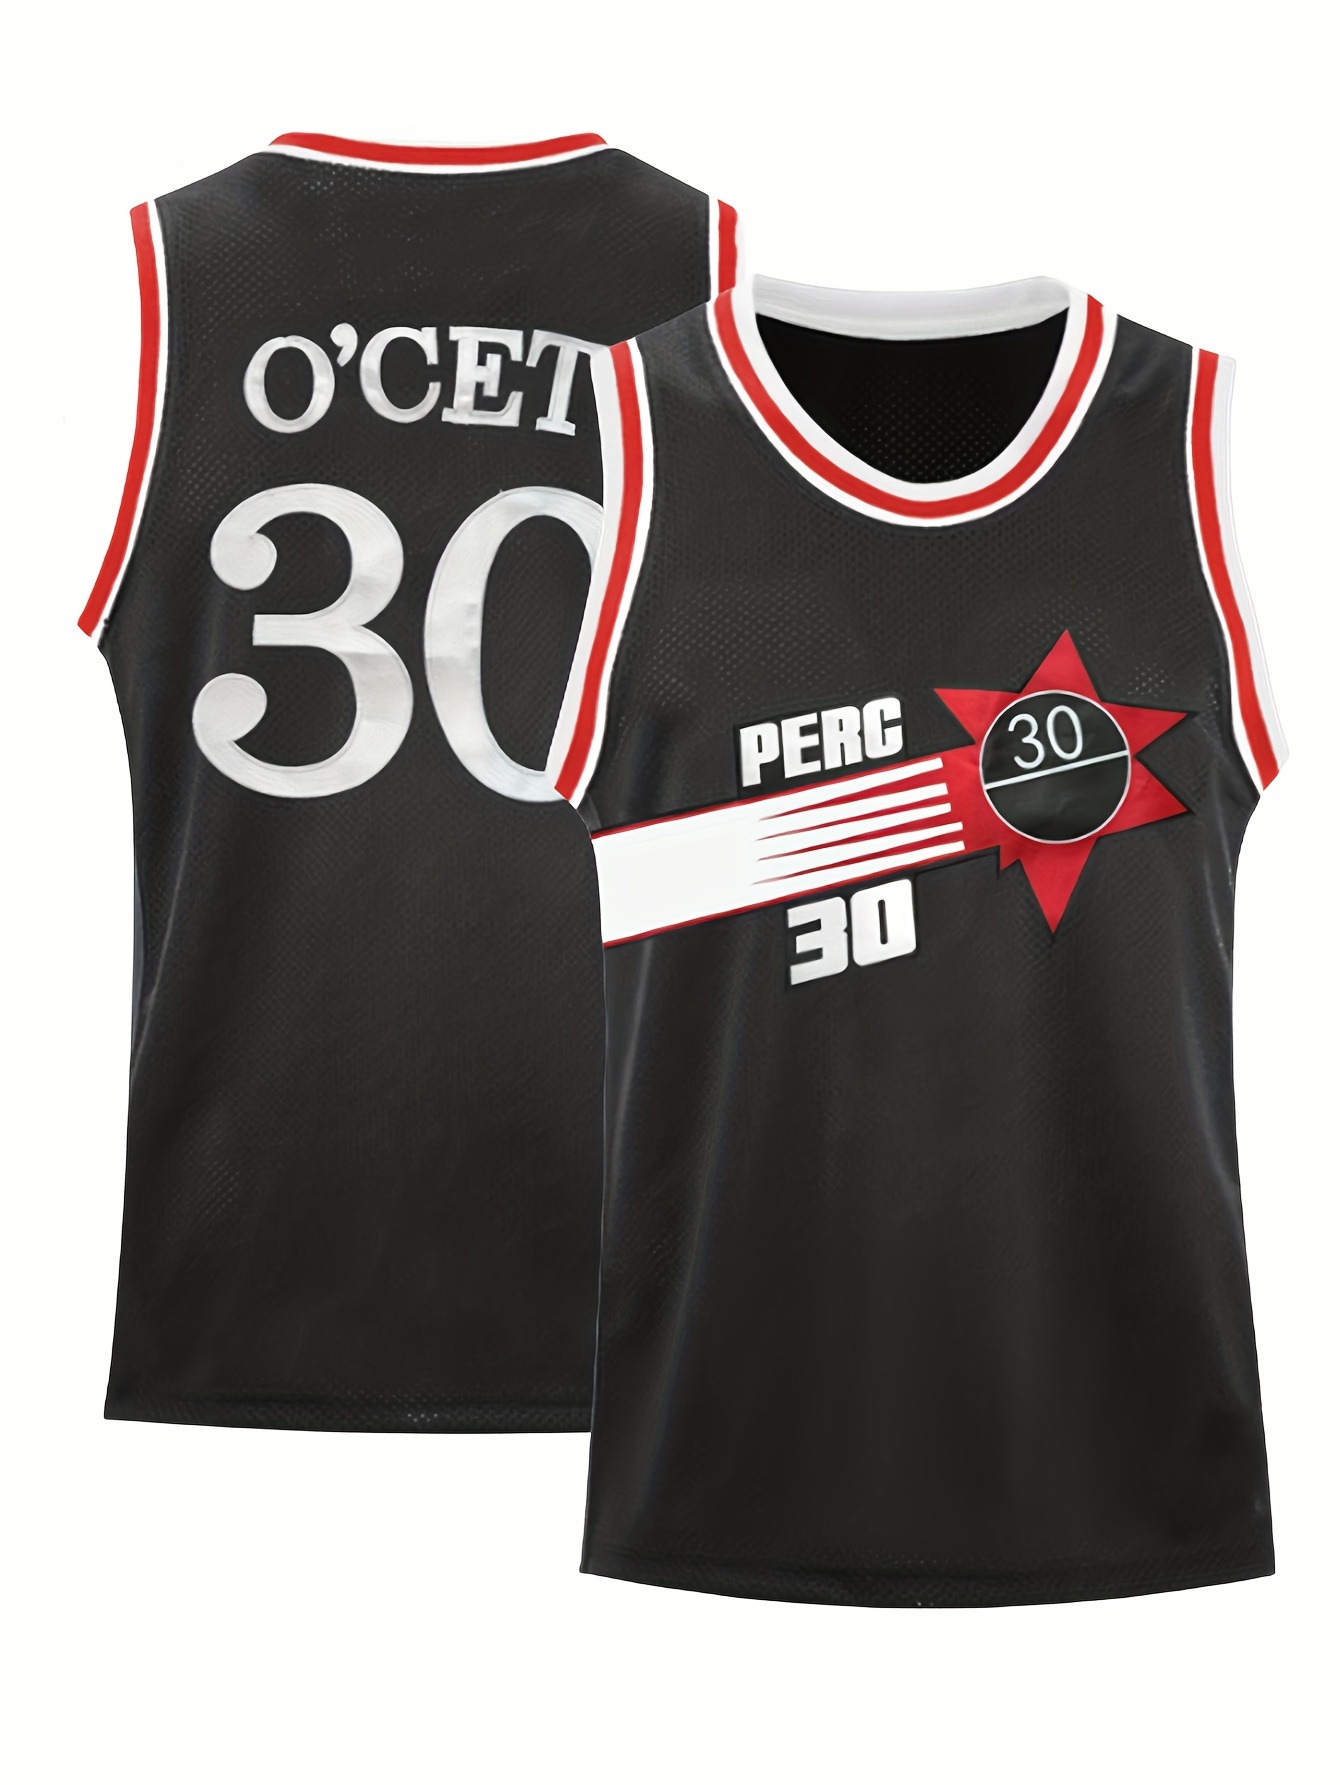 Camiseta de baloncesto retro con estampado de ¨O'CET #30¨ para hombre,  perfecta para festivales, fiestas y deportes al aire libre